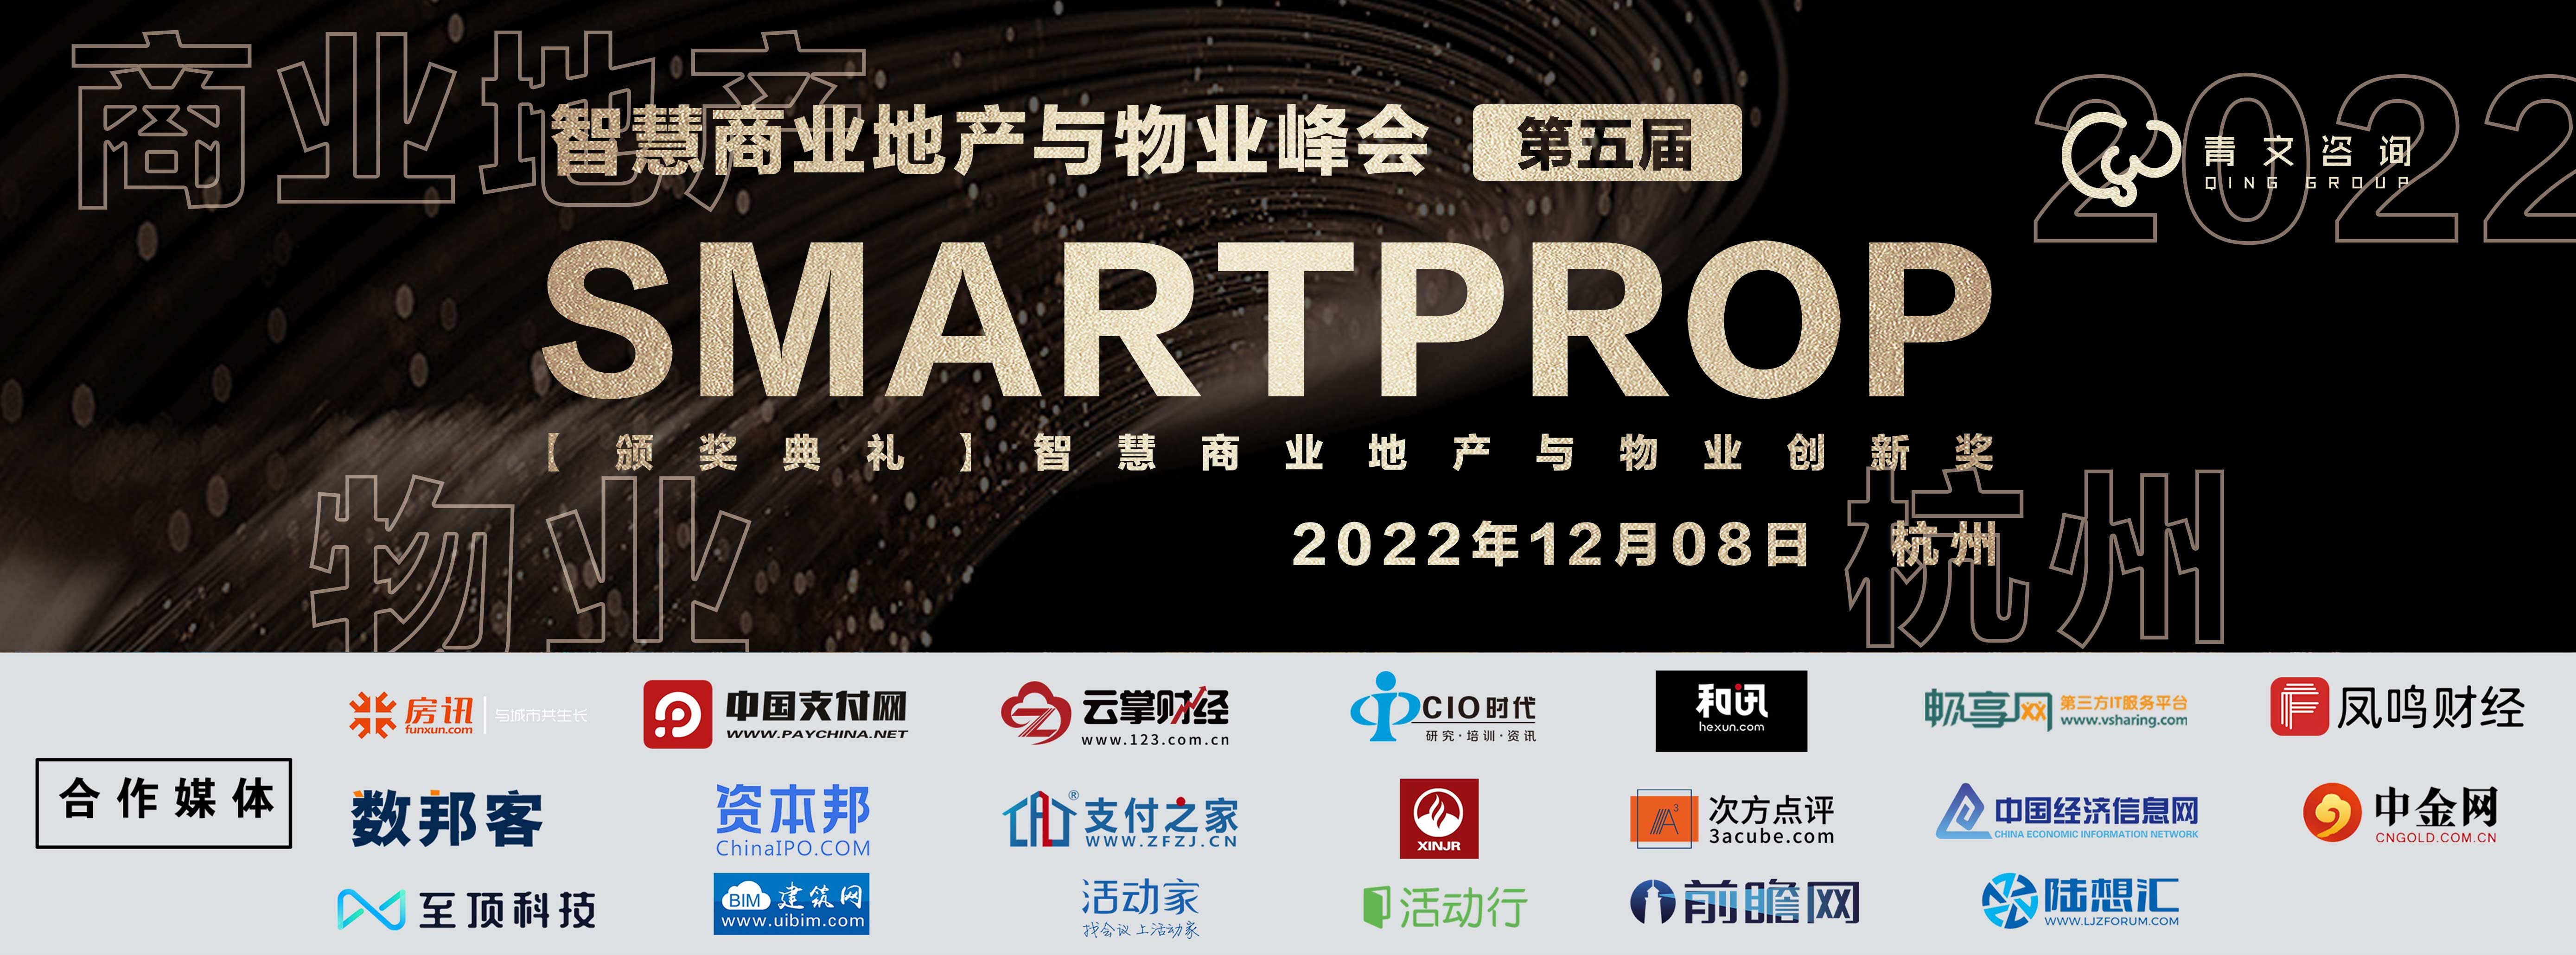 第五屆SmartProp智慧商業地產與物業峰會